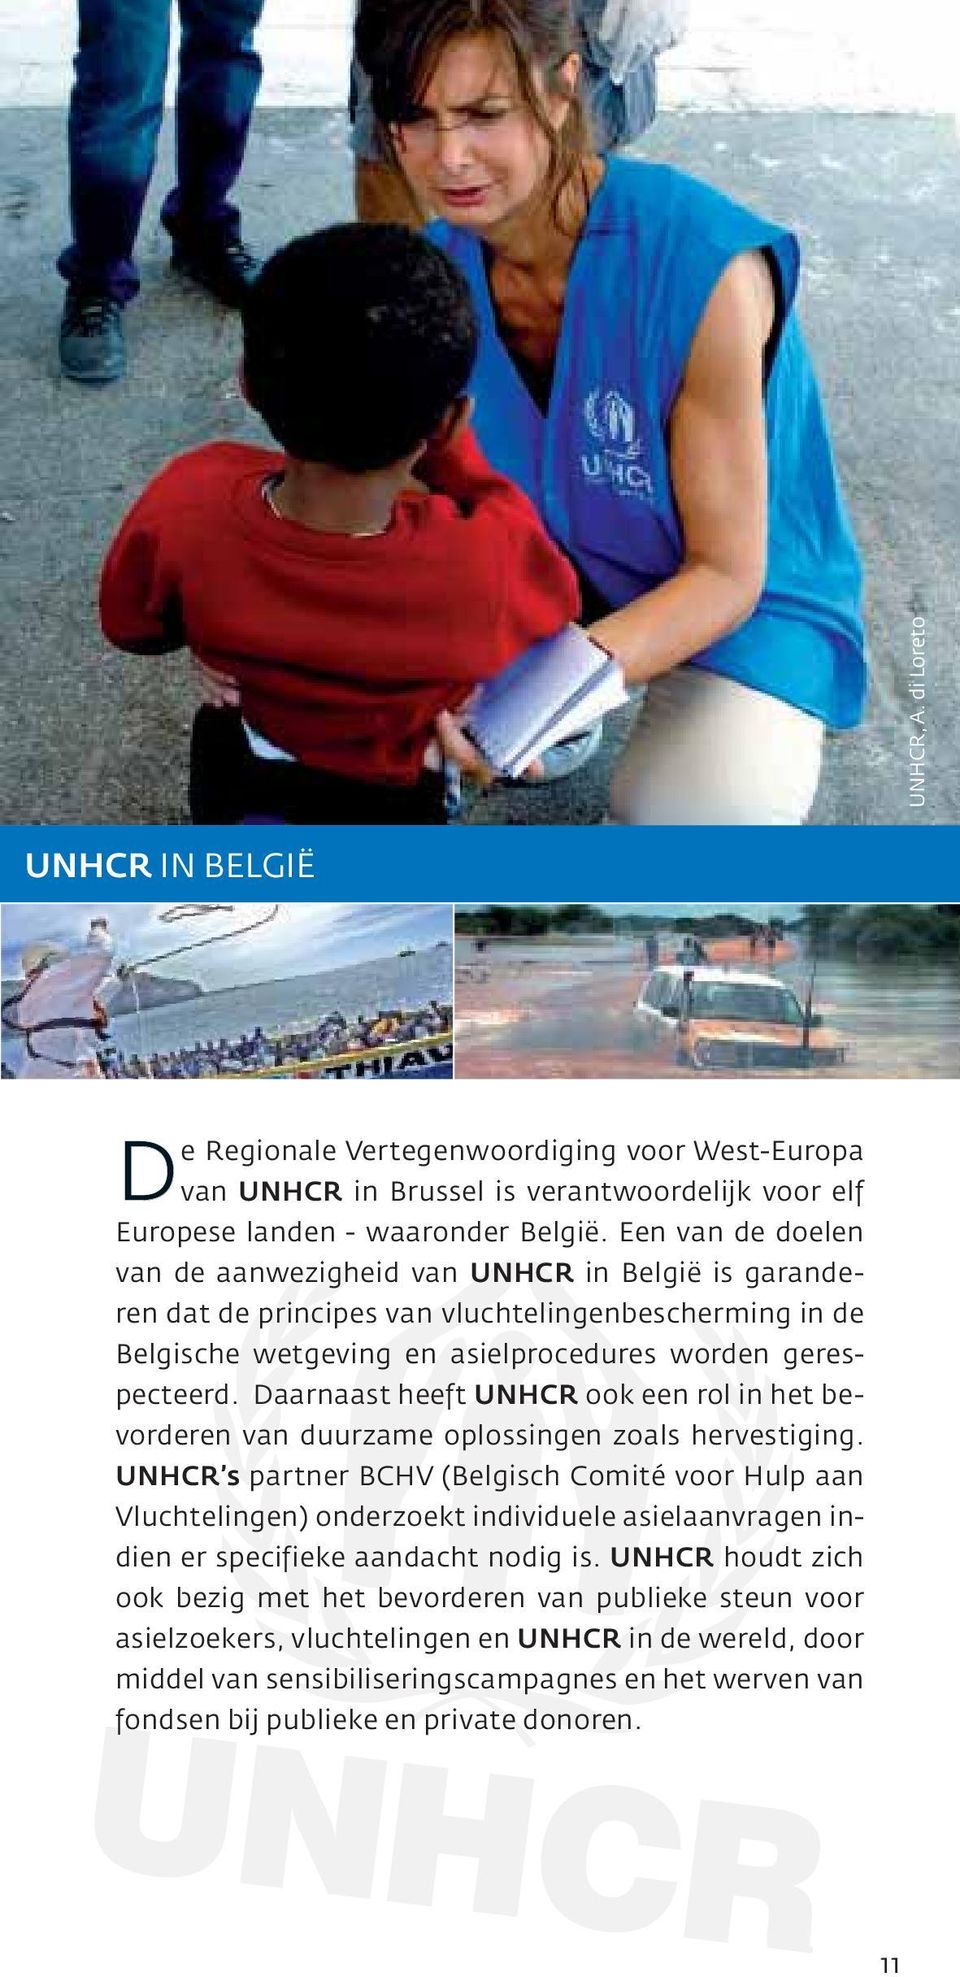 Daarnaast heeft UNHCR ook een rol in het bevorderen van duurzame oplossingen zoals hervestiging.